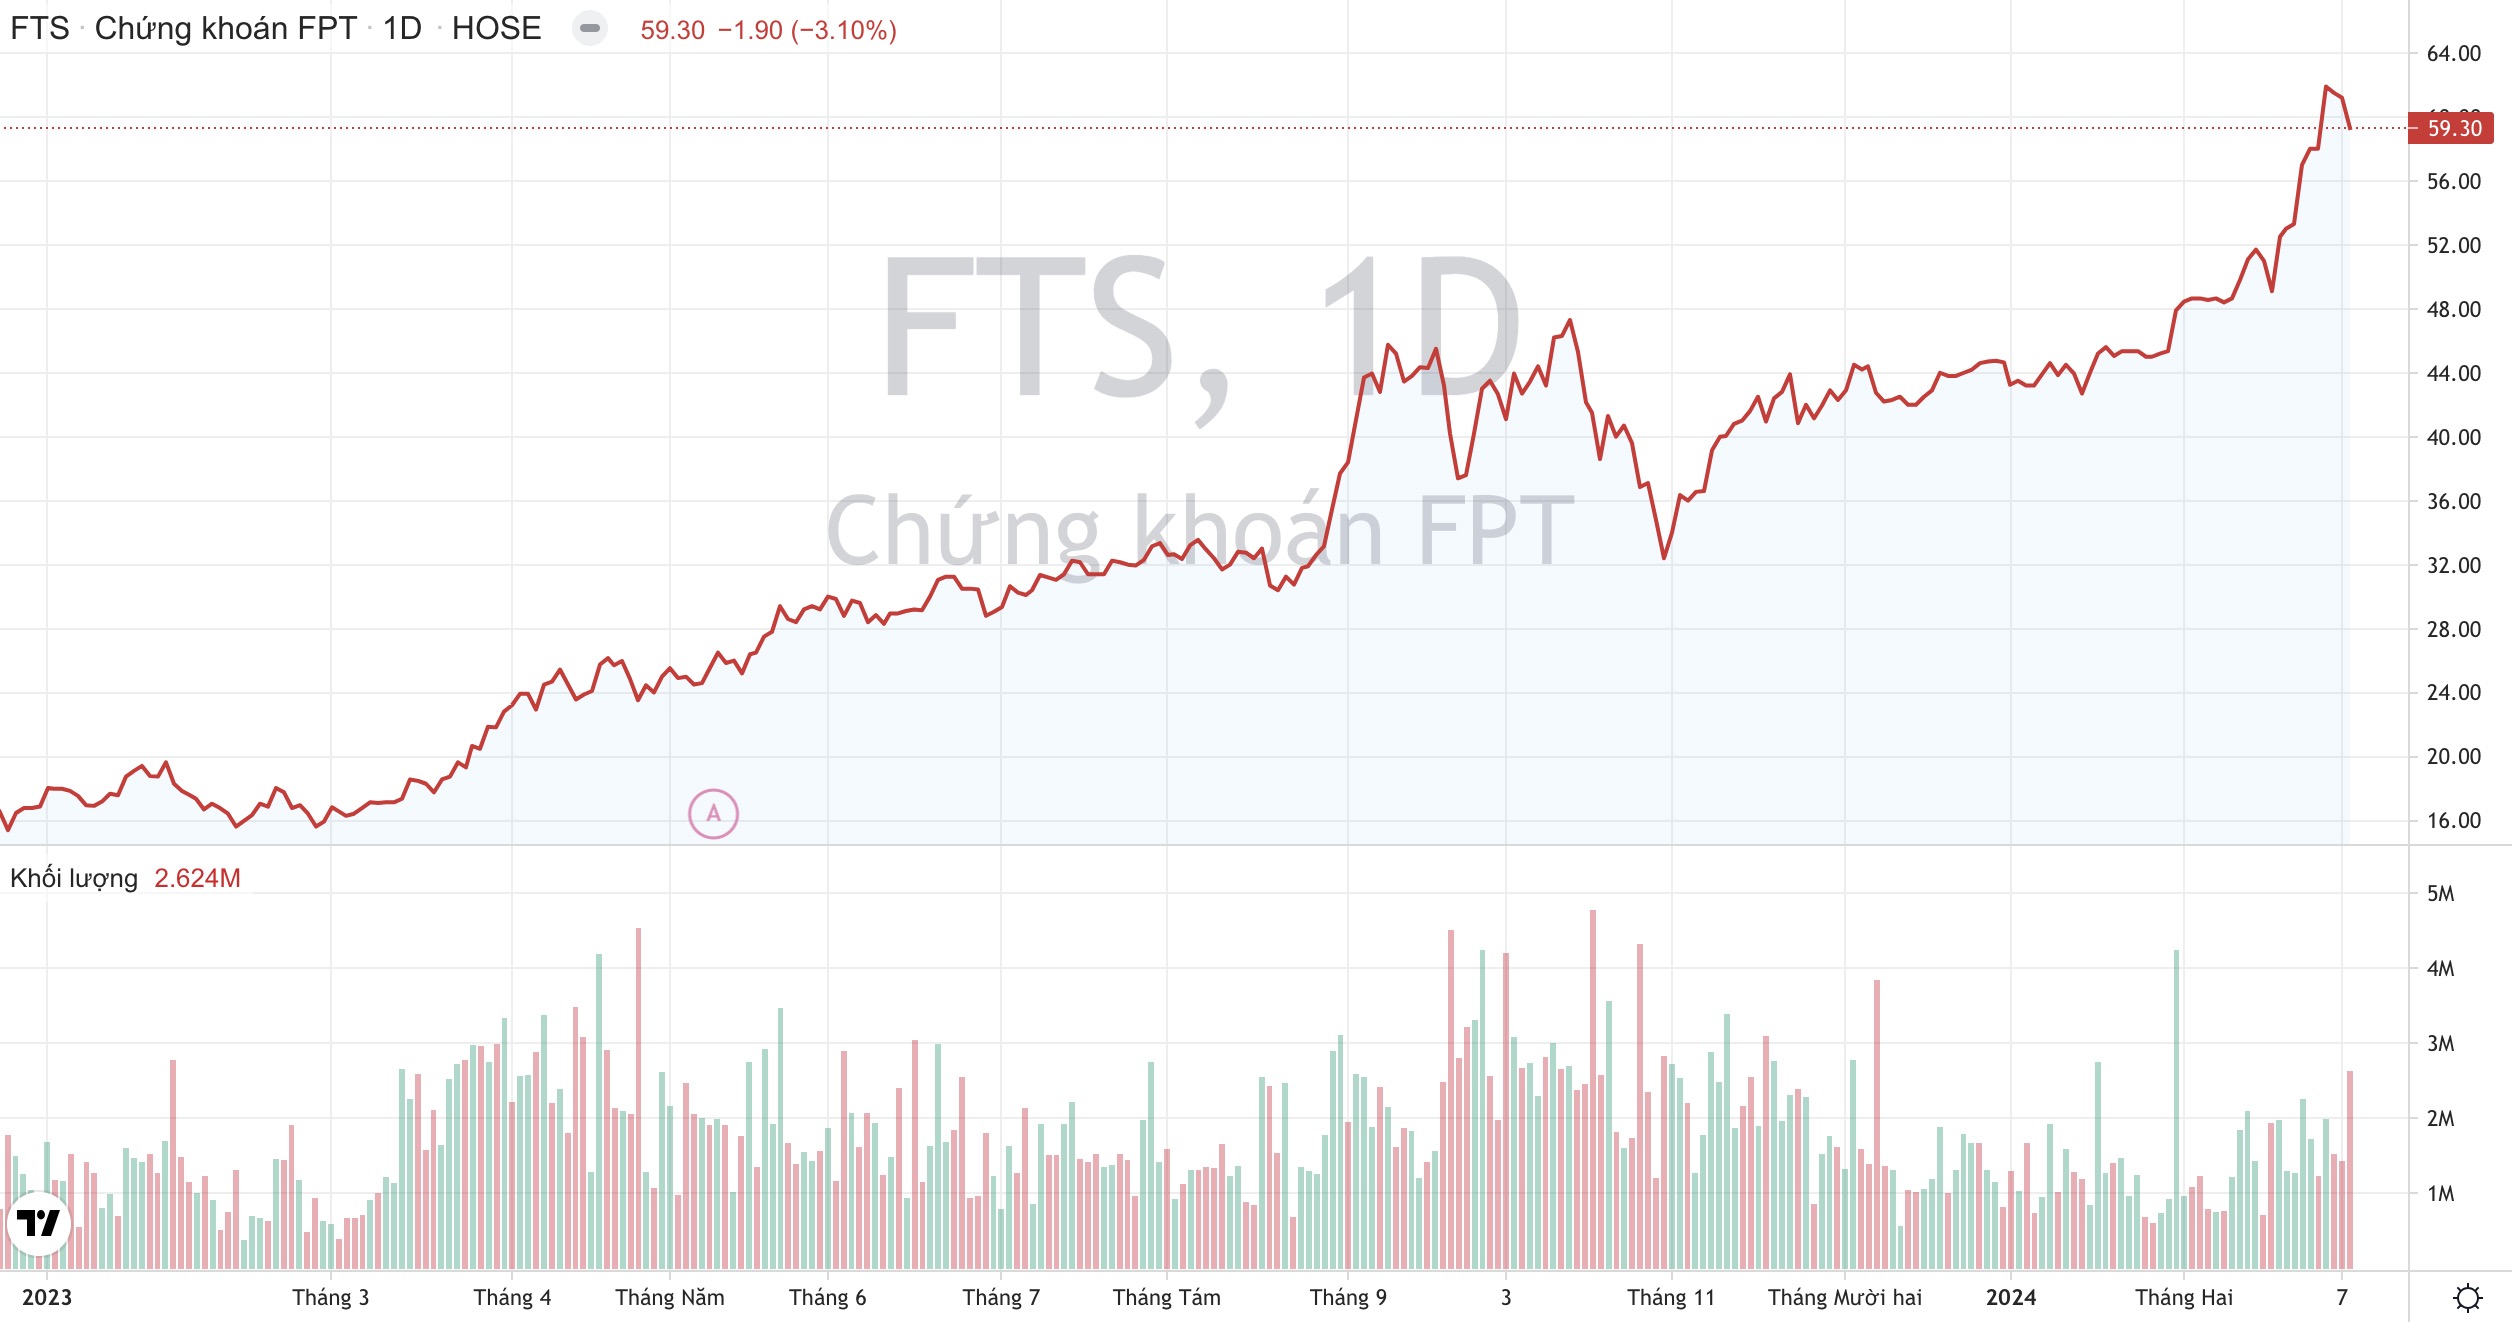 Chứng khoán FPT (FTS): Cạnh tranh giữa các hãng chứng khoán năm nay sẽ khốc liệt hơn